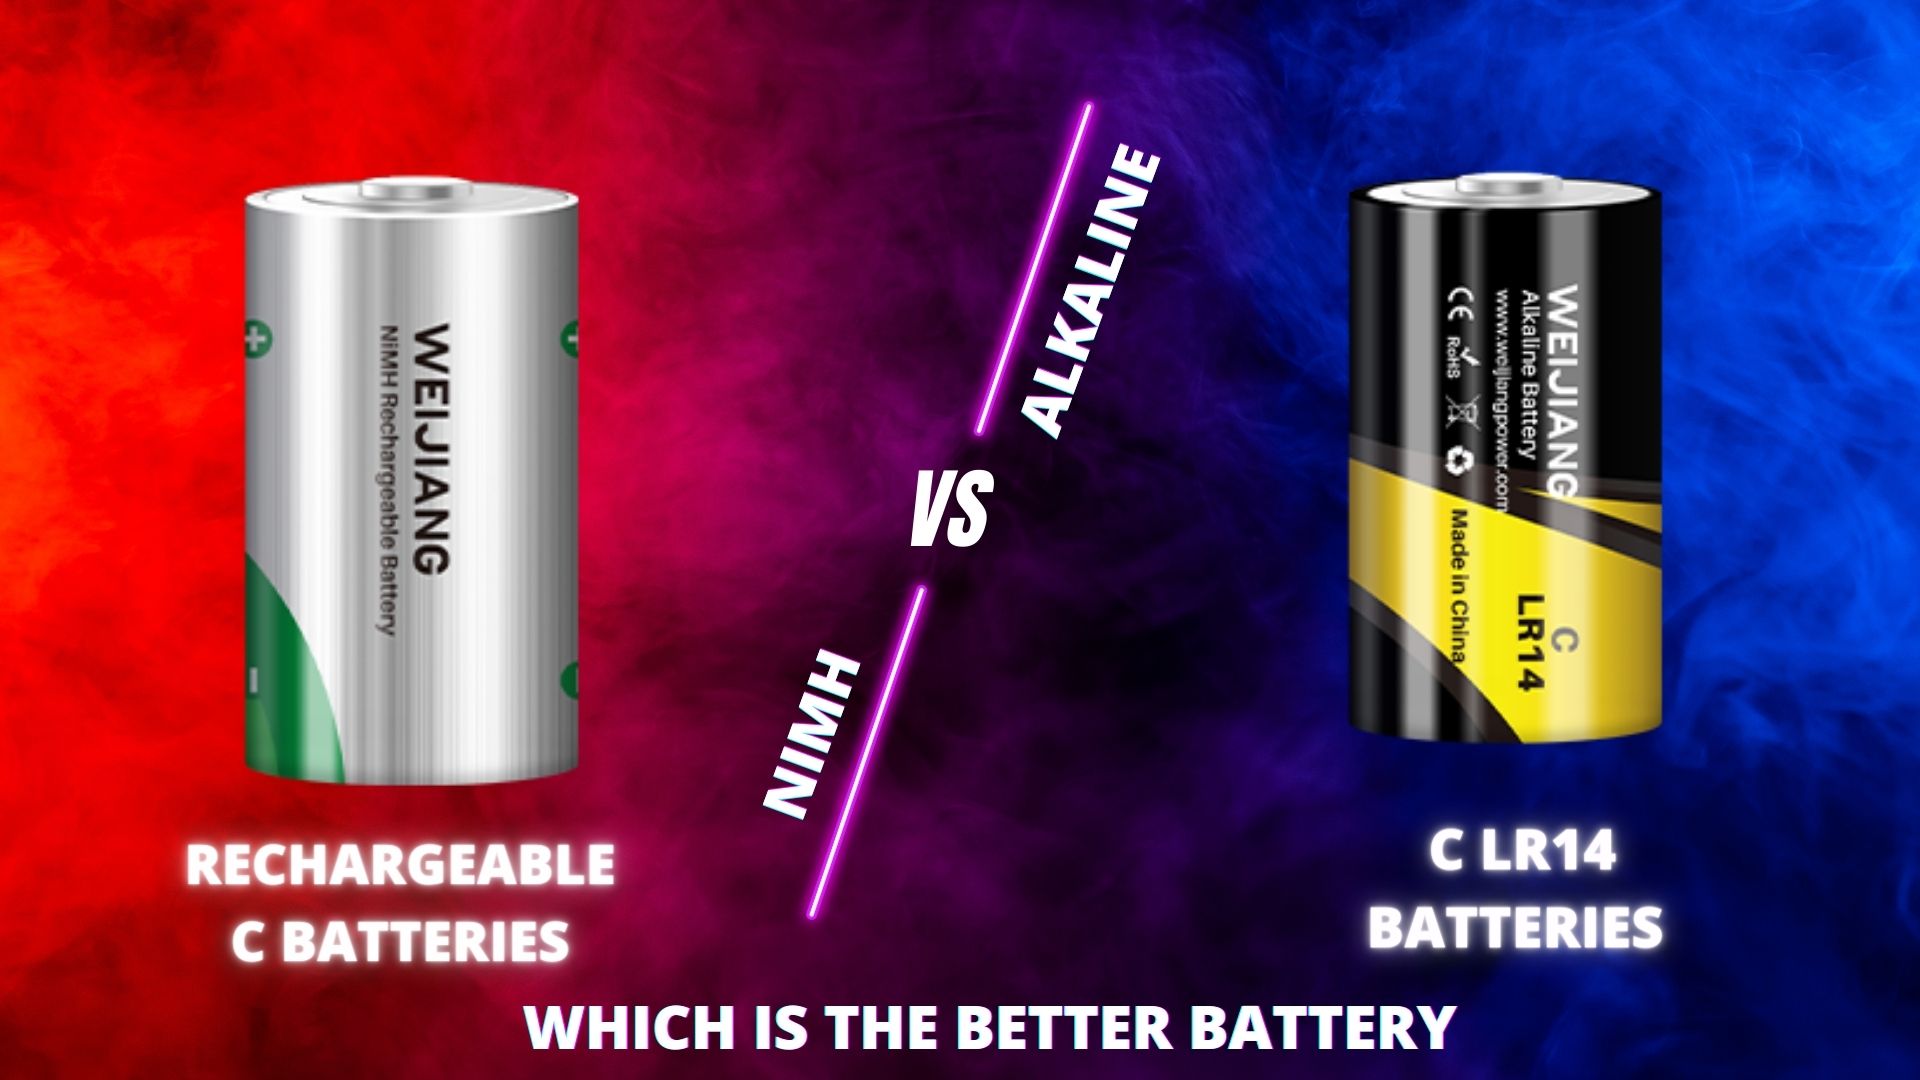 रिचार्जेबल सी बैटरी बनाम क्षारीय सी एलआर14 बैटरी आपके व्यवसाय के लिए सर्वश्रेष्ठ सी बैटरी कौन सी है